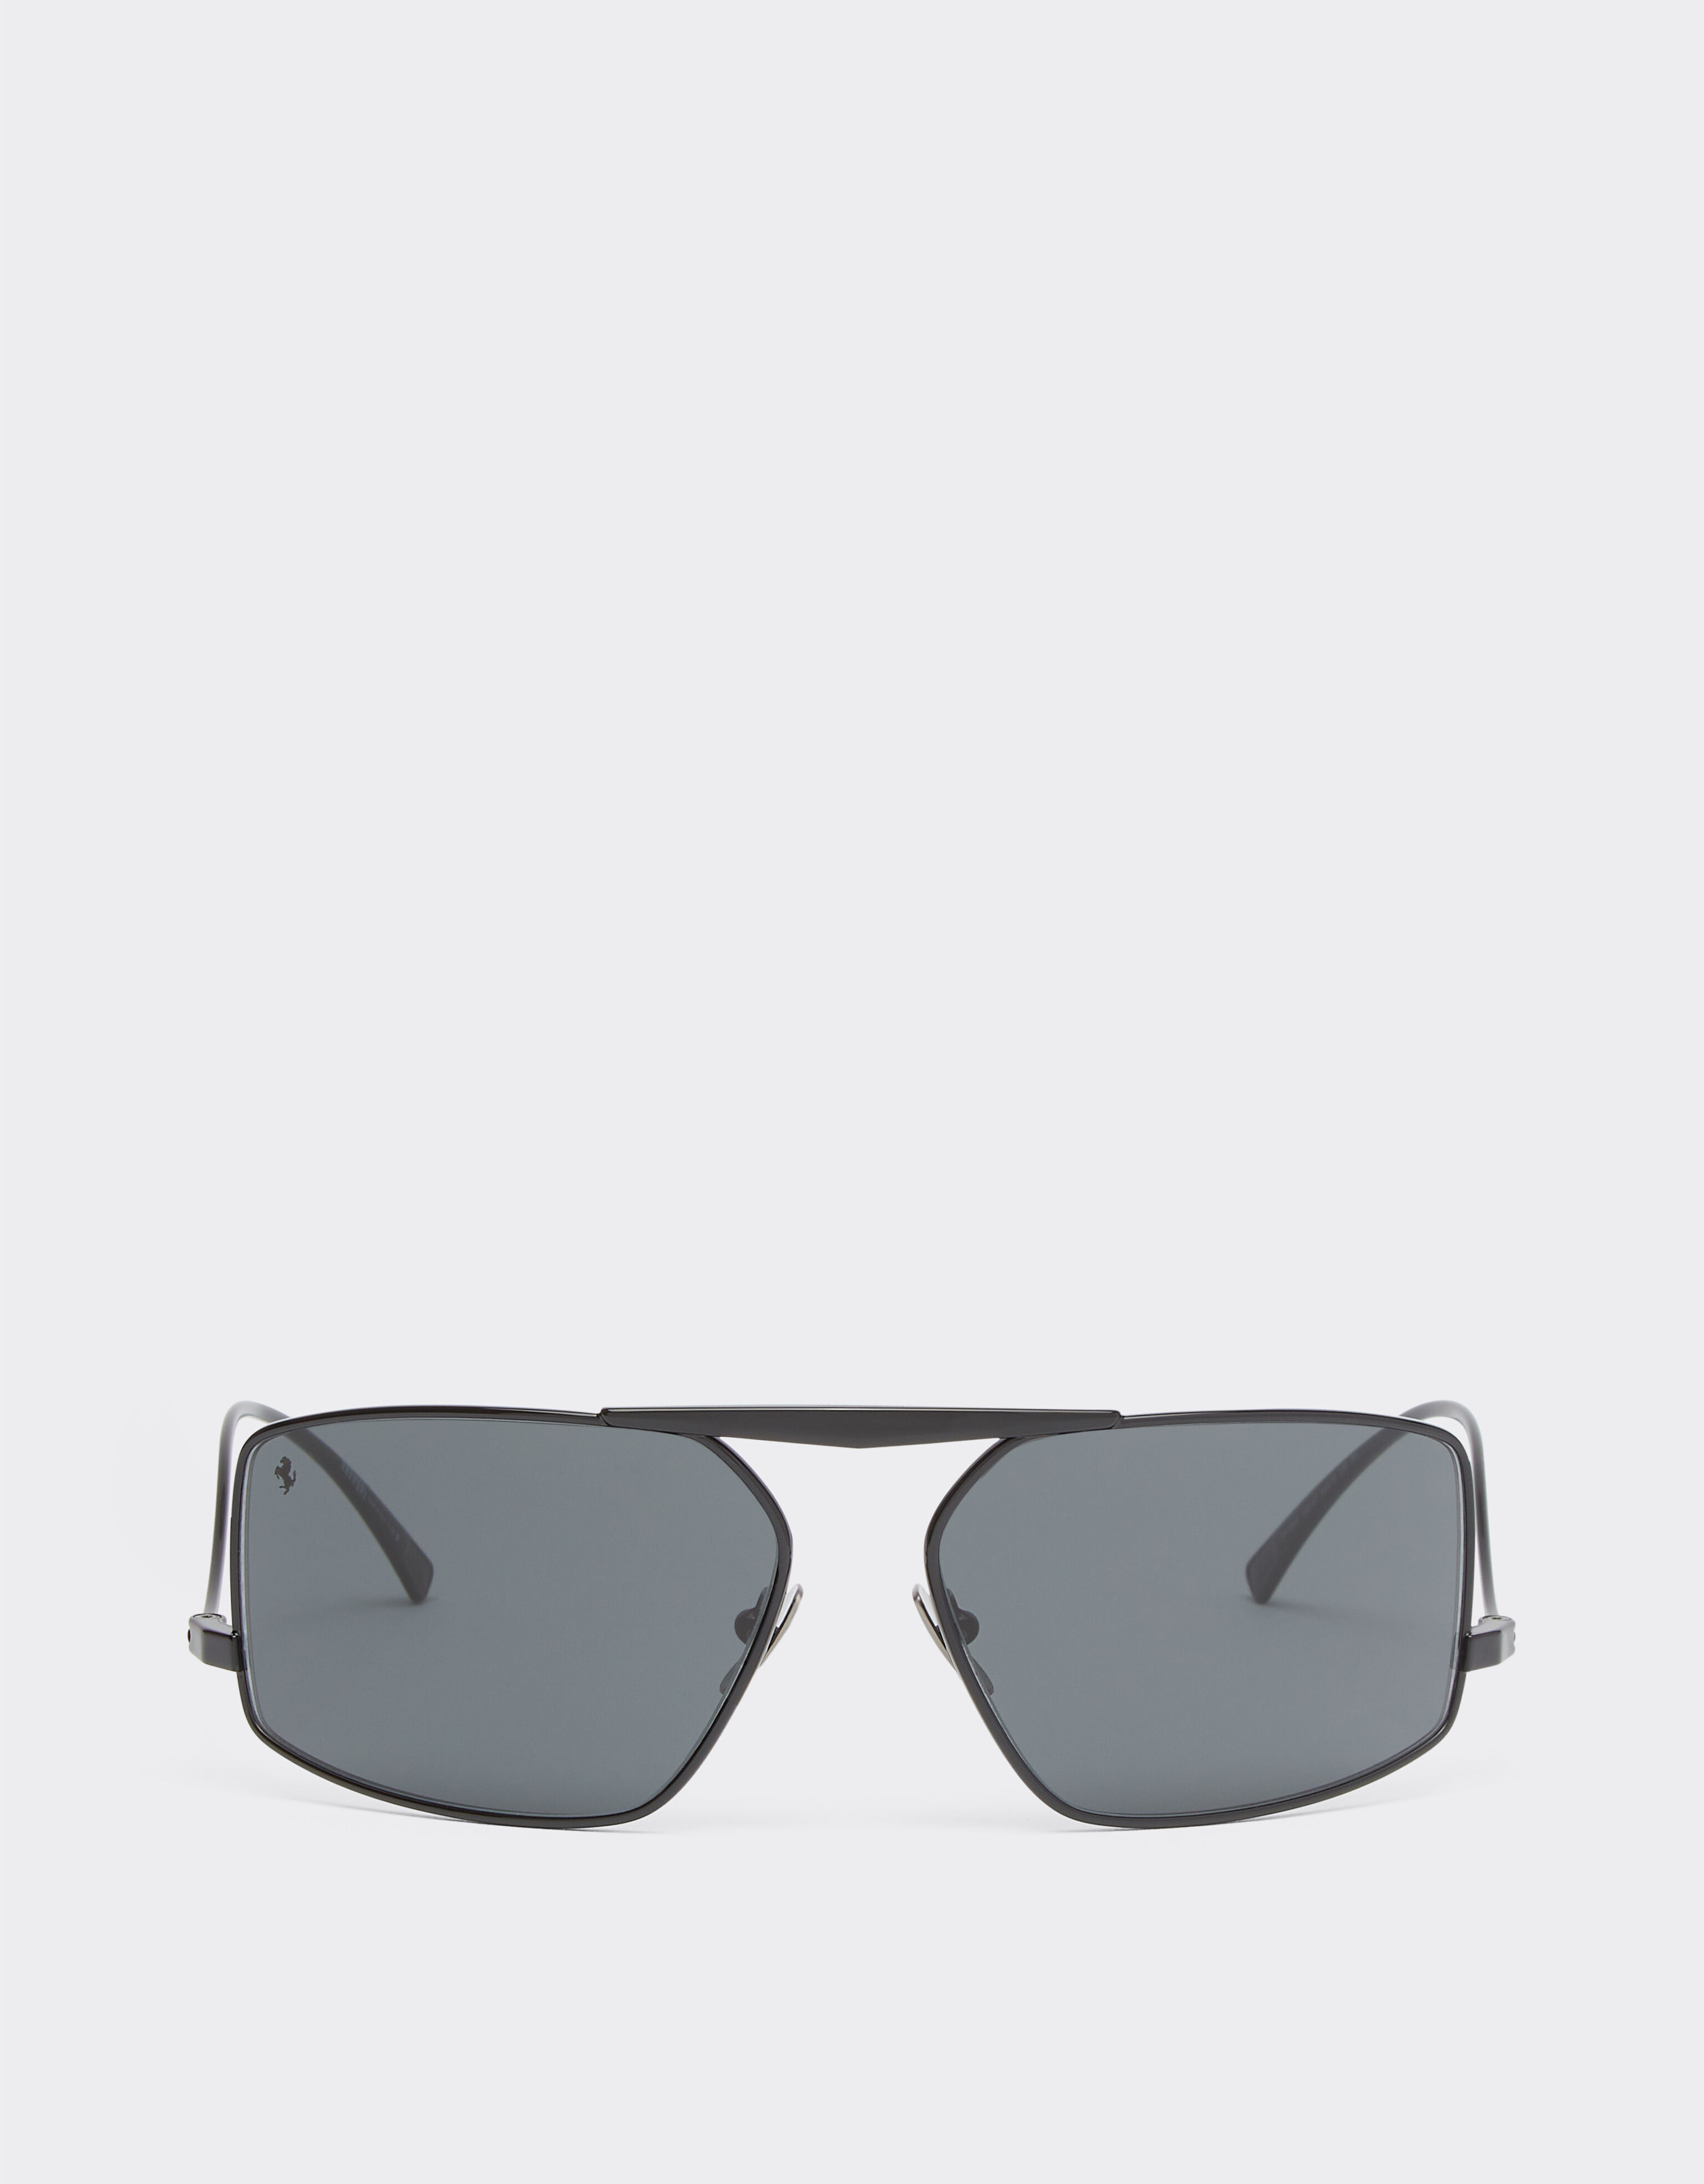 Ferrari Ferrari sunglasses in black metal with grey lenses Ingrid F1255f